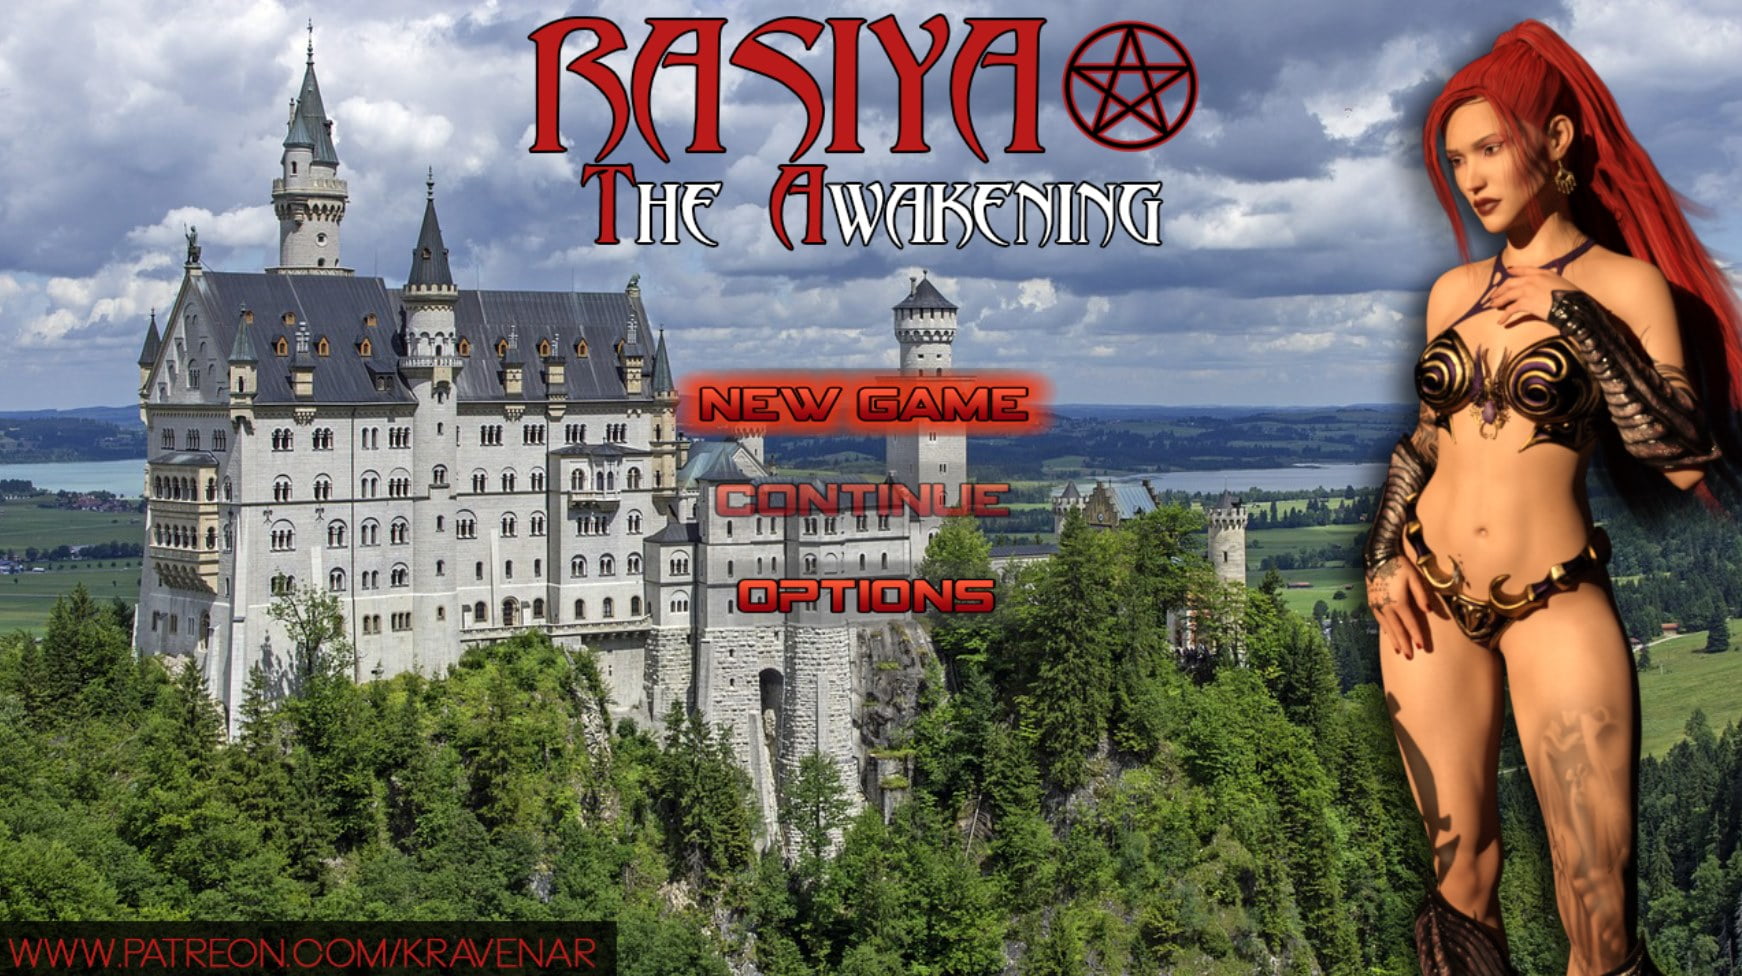 Rasiya Sex Video Download - Rasiya: The Awakening RPGM Porn Sex Game v.Final Download for Windows,  MacOS, Linux